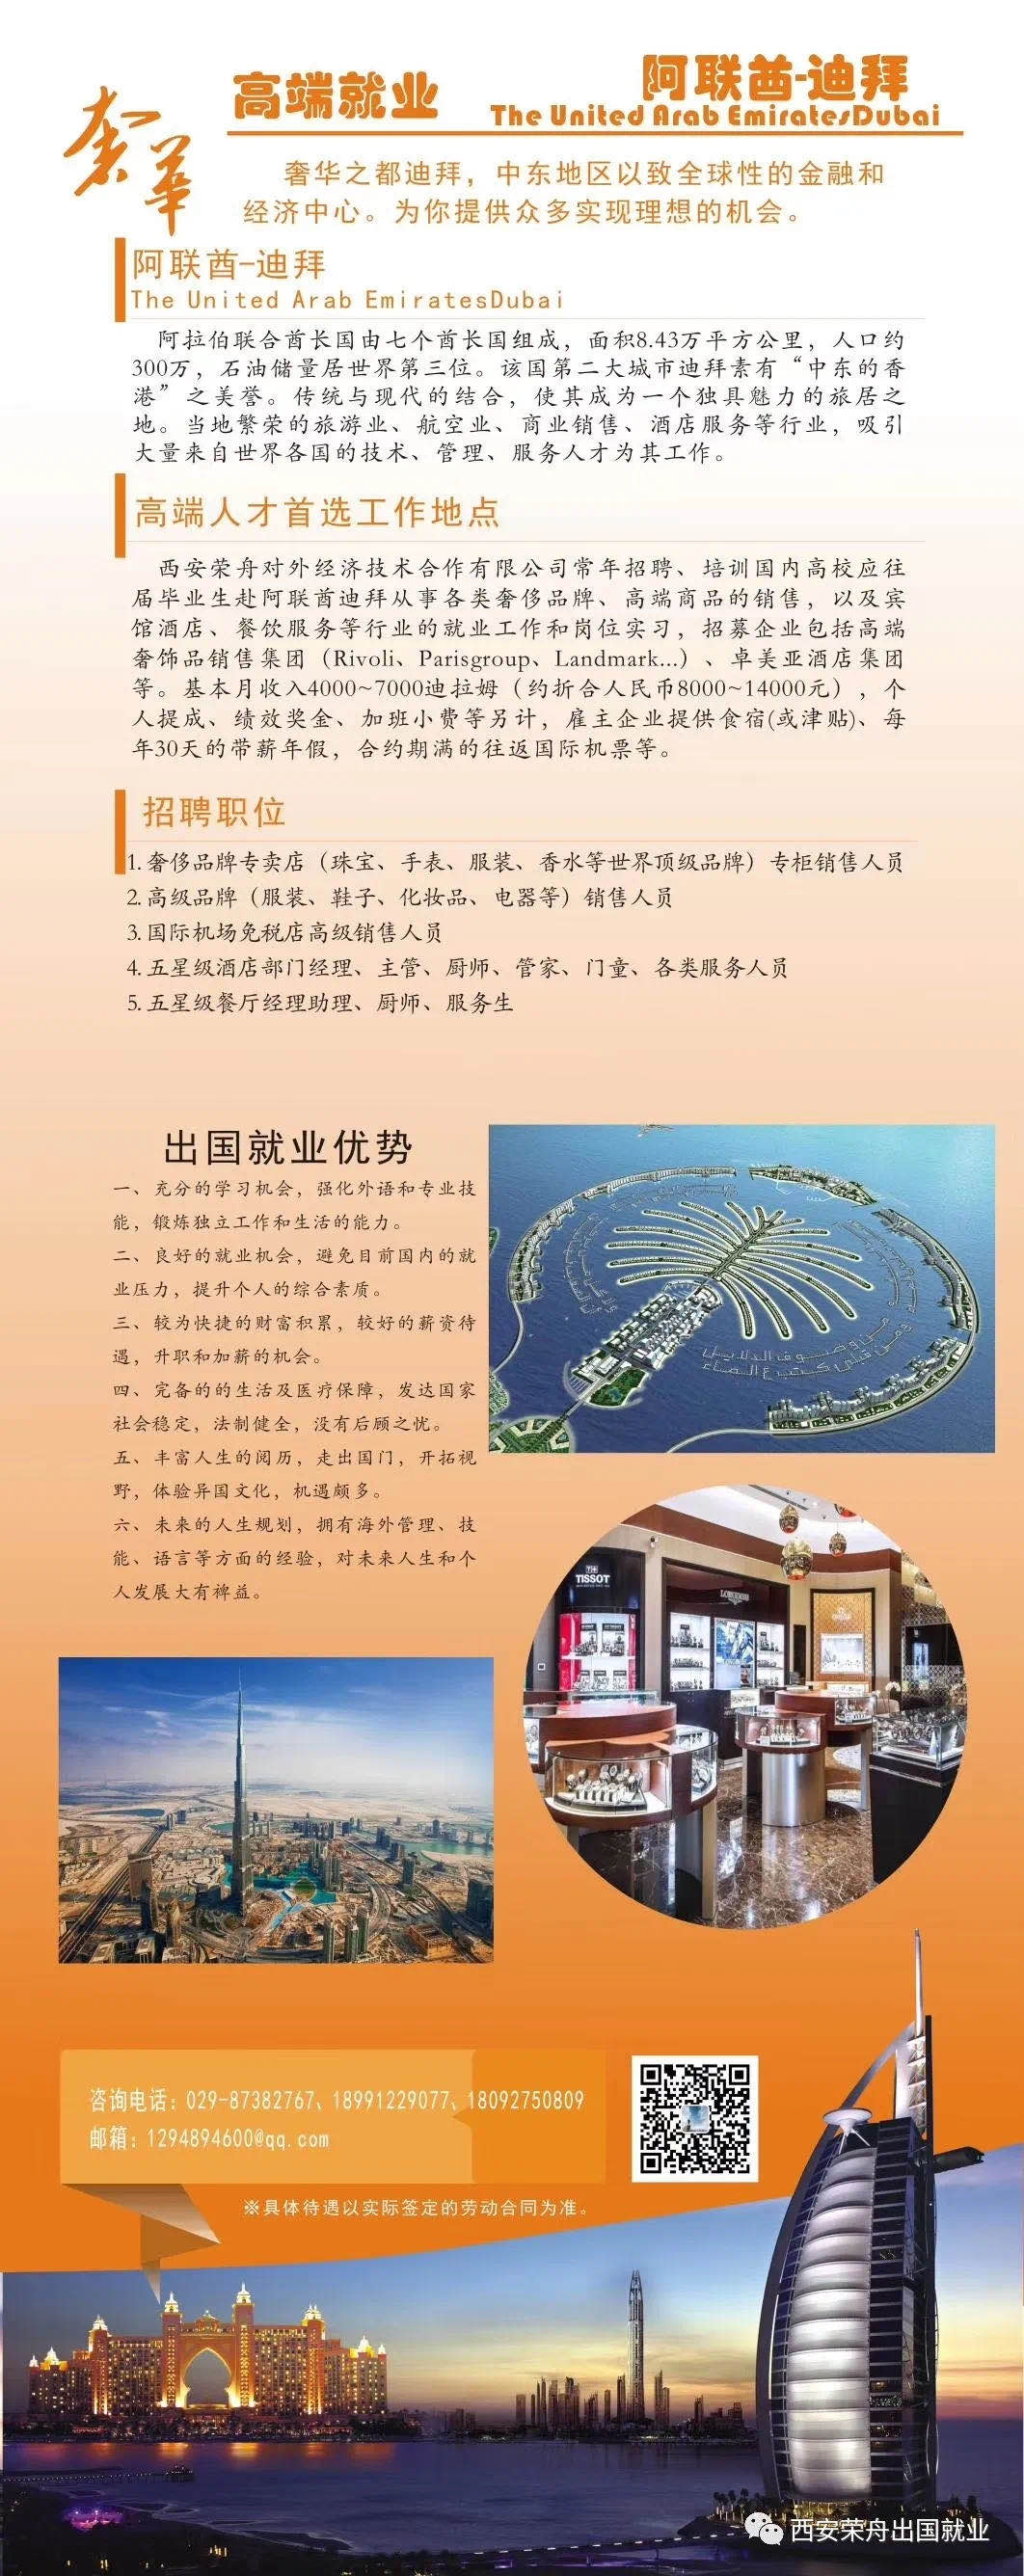 西安荣舟最新项目围观